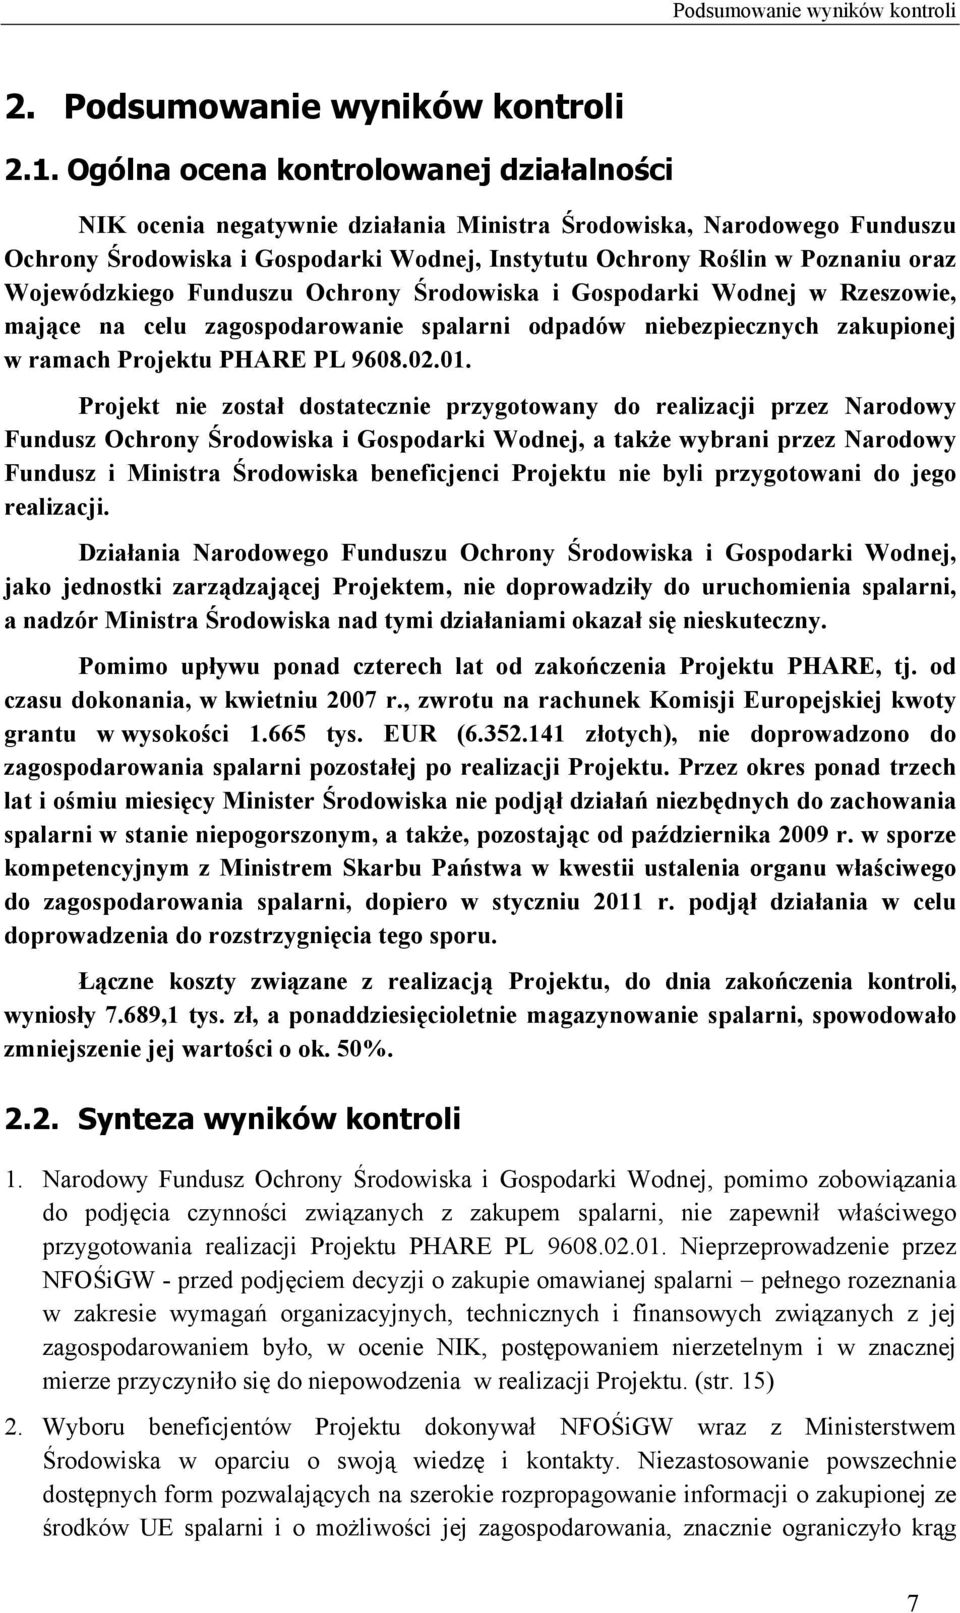 Wojewódzkiego Funduszu Ochrony Środowiska i Gospodarki Wodnej w Rzeszowie, mające na celu zagospodarowanie spalarni odpadów niebezpiecznych zakupionej w ramach Projektu PHARE PL 9608.02.01.